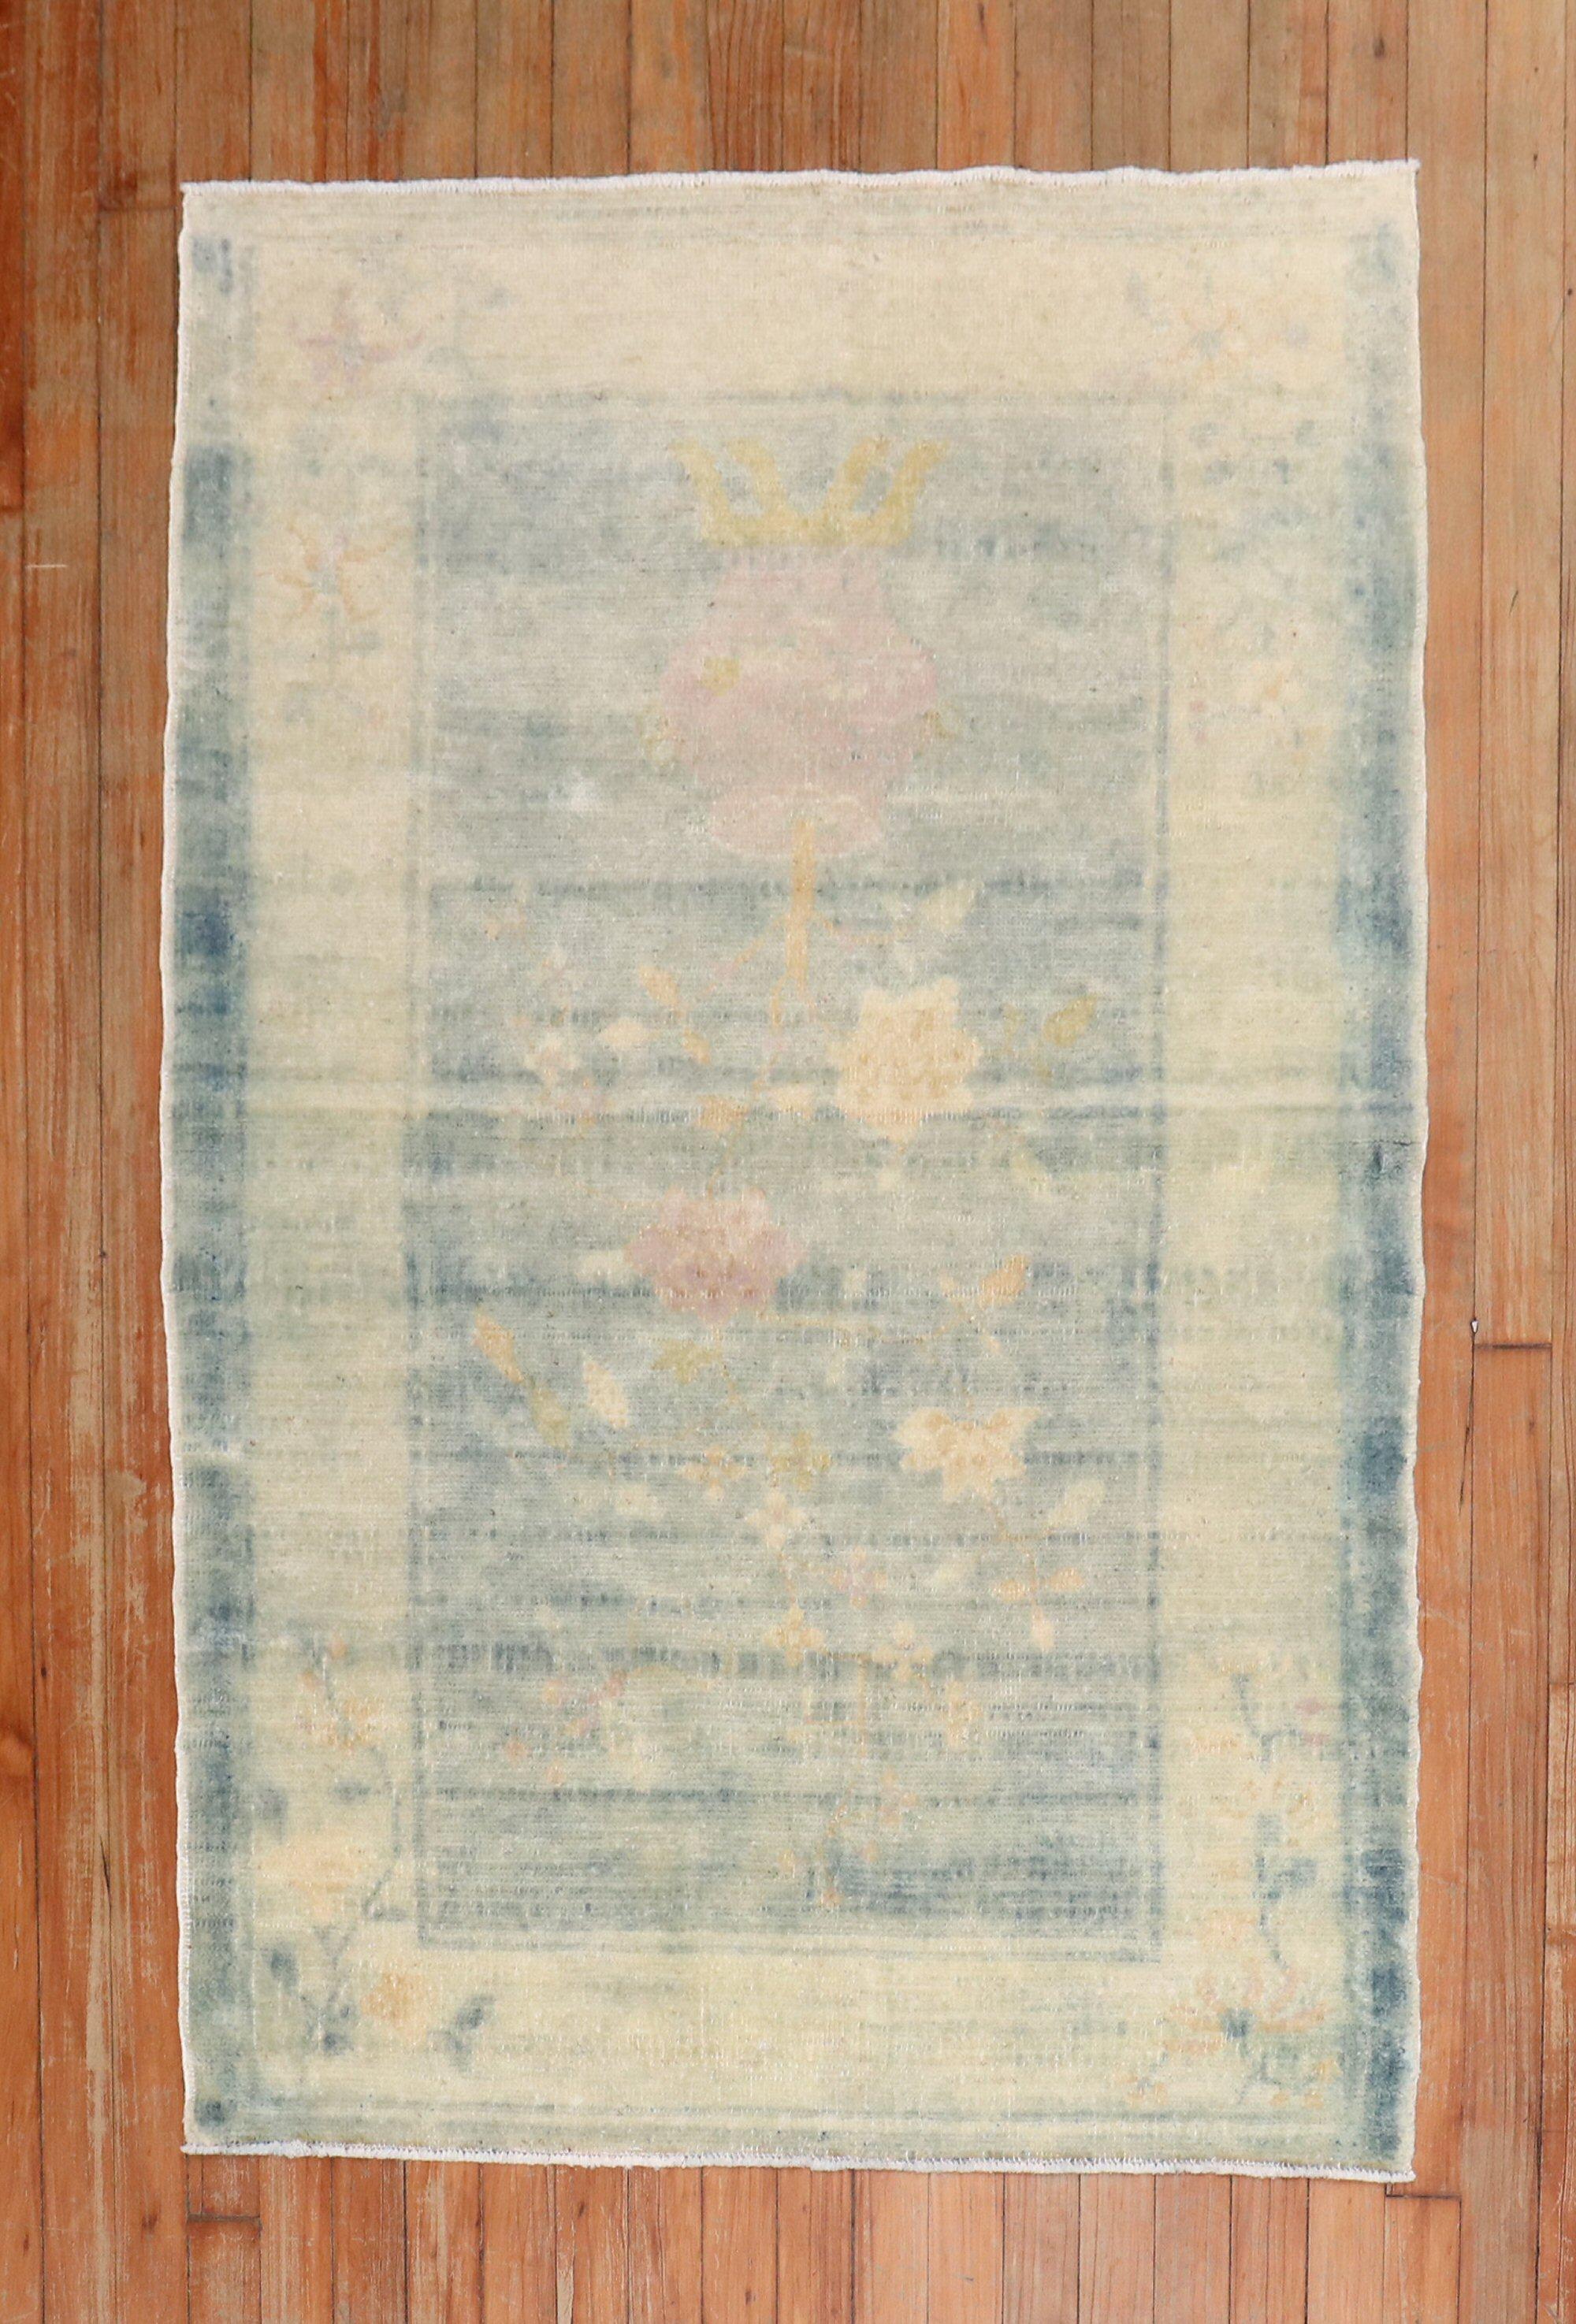 Chinesischer Teppich aus dem frühen 20. Jahrhundert in verblasstem, wässrigem Blau mit Akzenten in Elfenbein und Rosa

Maße: 3'2 x 4'9''.